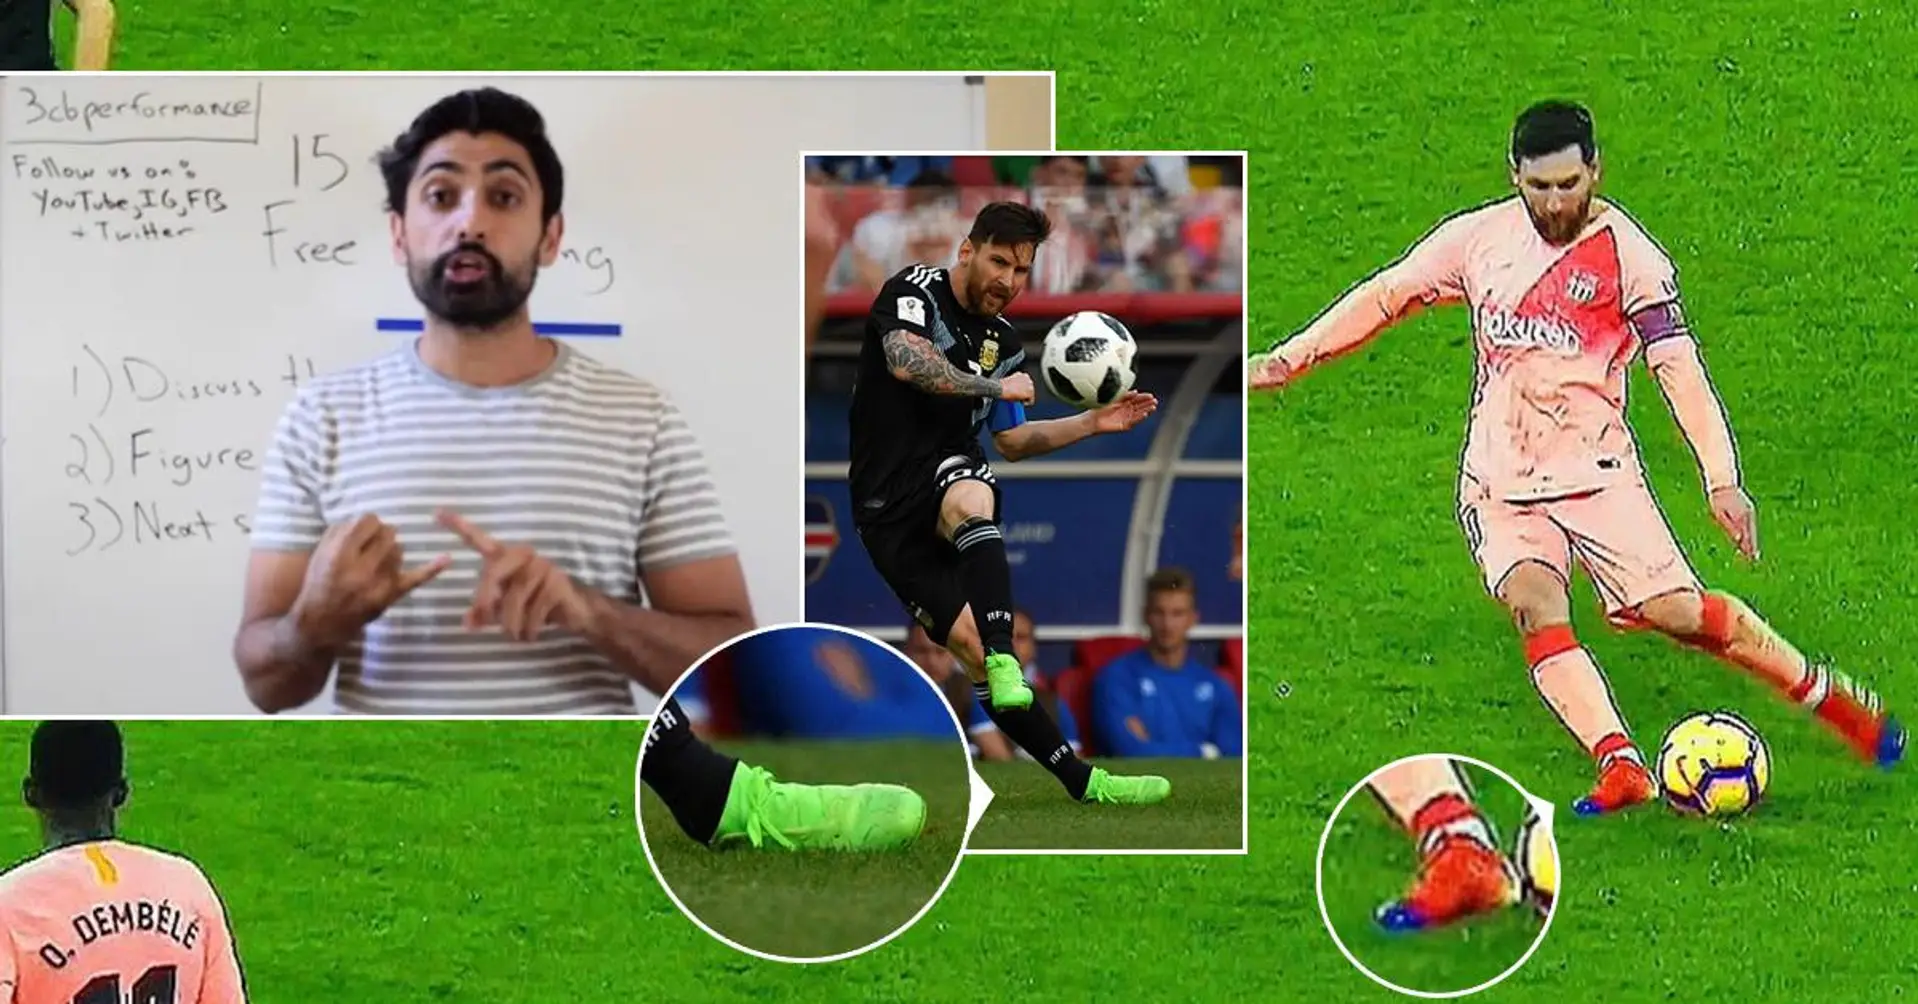 Le scientifique américain Rajpal Brar explique la technique unique de «foulure de la cheville» de Messi - c'est pourquoi il marque tant de buts sur coup franc